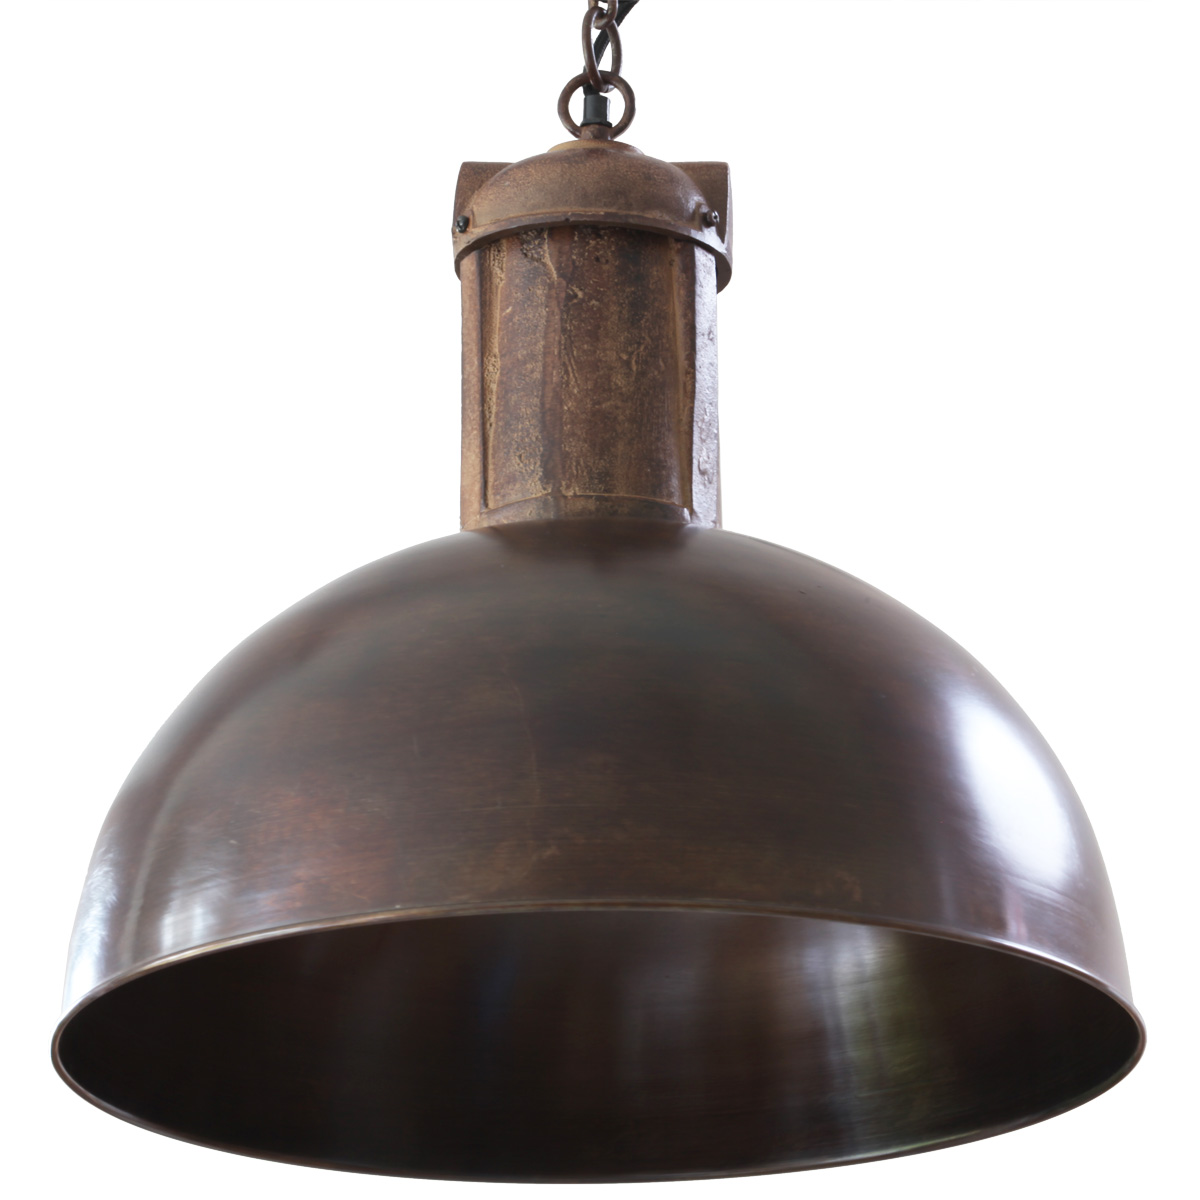 SOLAR kupferne Nostalgie-Fabriklampe an Kette: Die kupferne Fabriklampe mit 50 cm Durchmesser (großes Modell)